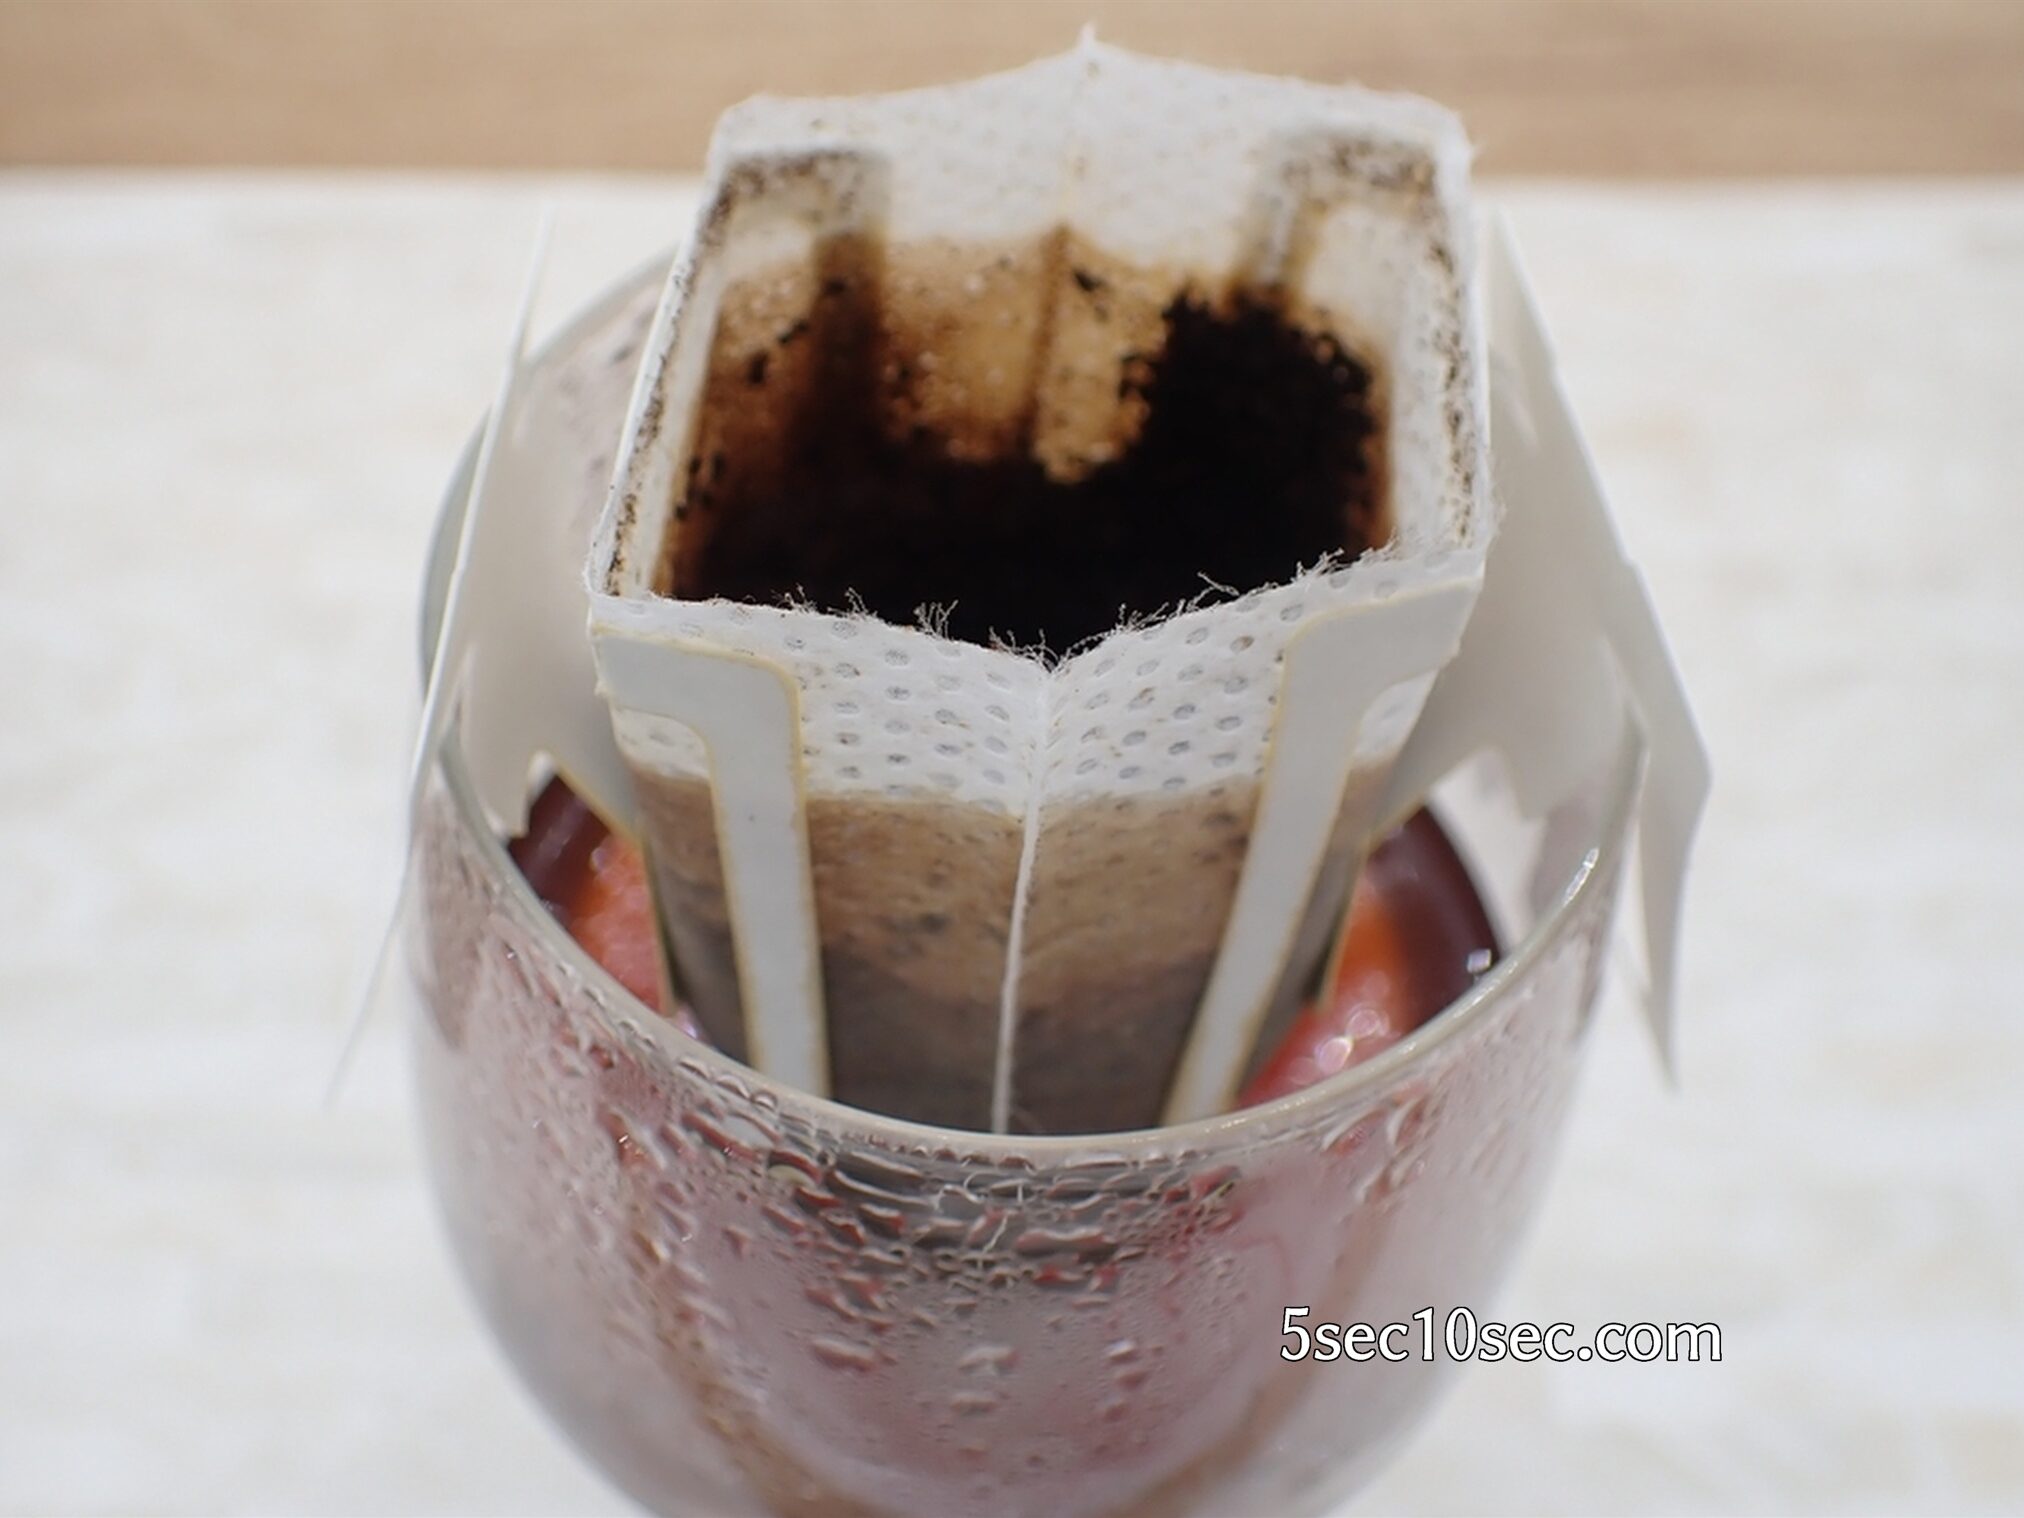 耐熱グラスを使用してラム酒のコーヒーカクテルを作っています